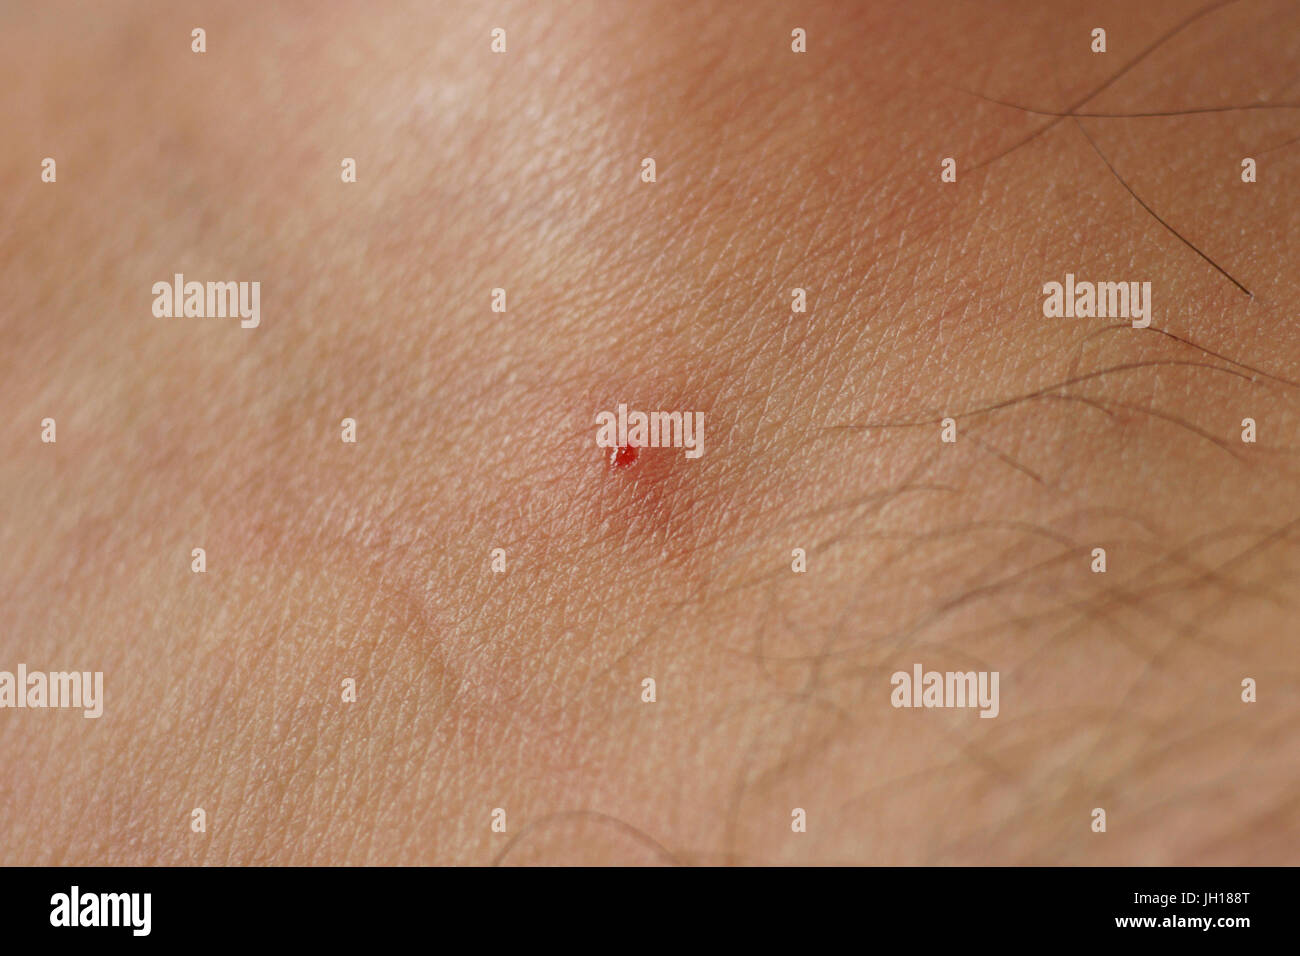 Schwarze Fliege Biss, Haut, Menschen, São Paulo, Brasilien Stockfotografie  - Alamy